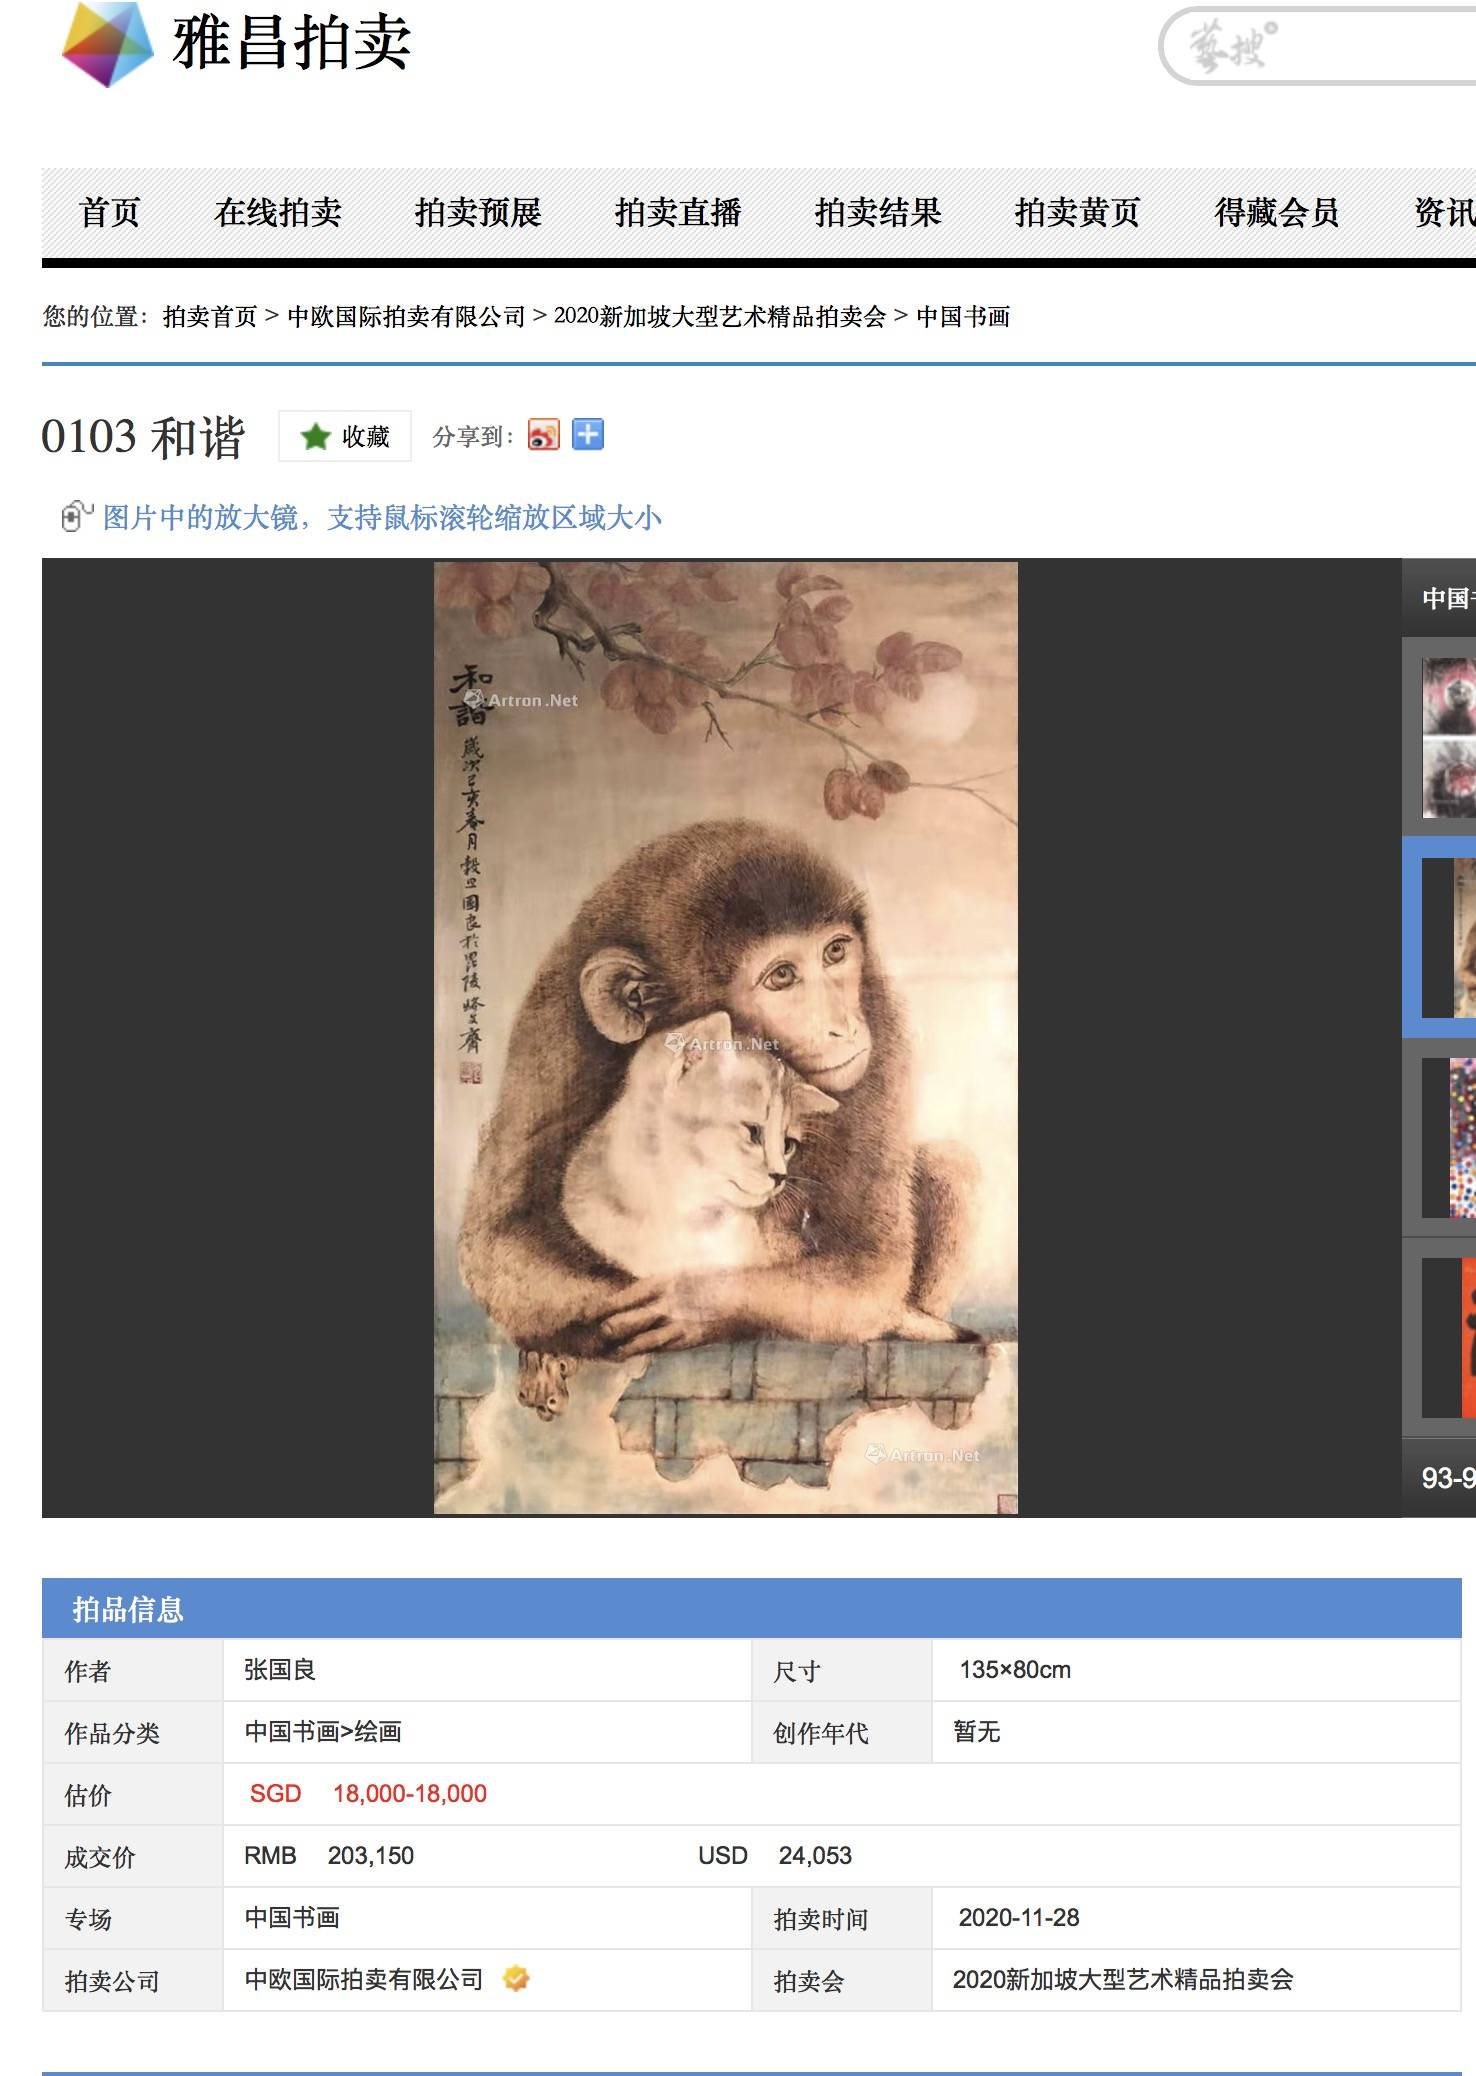 中国烙画大师张国良新作《和谐》在新加坡拍卖以20万元成交破其市场最高纪录